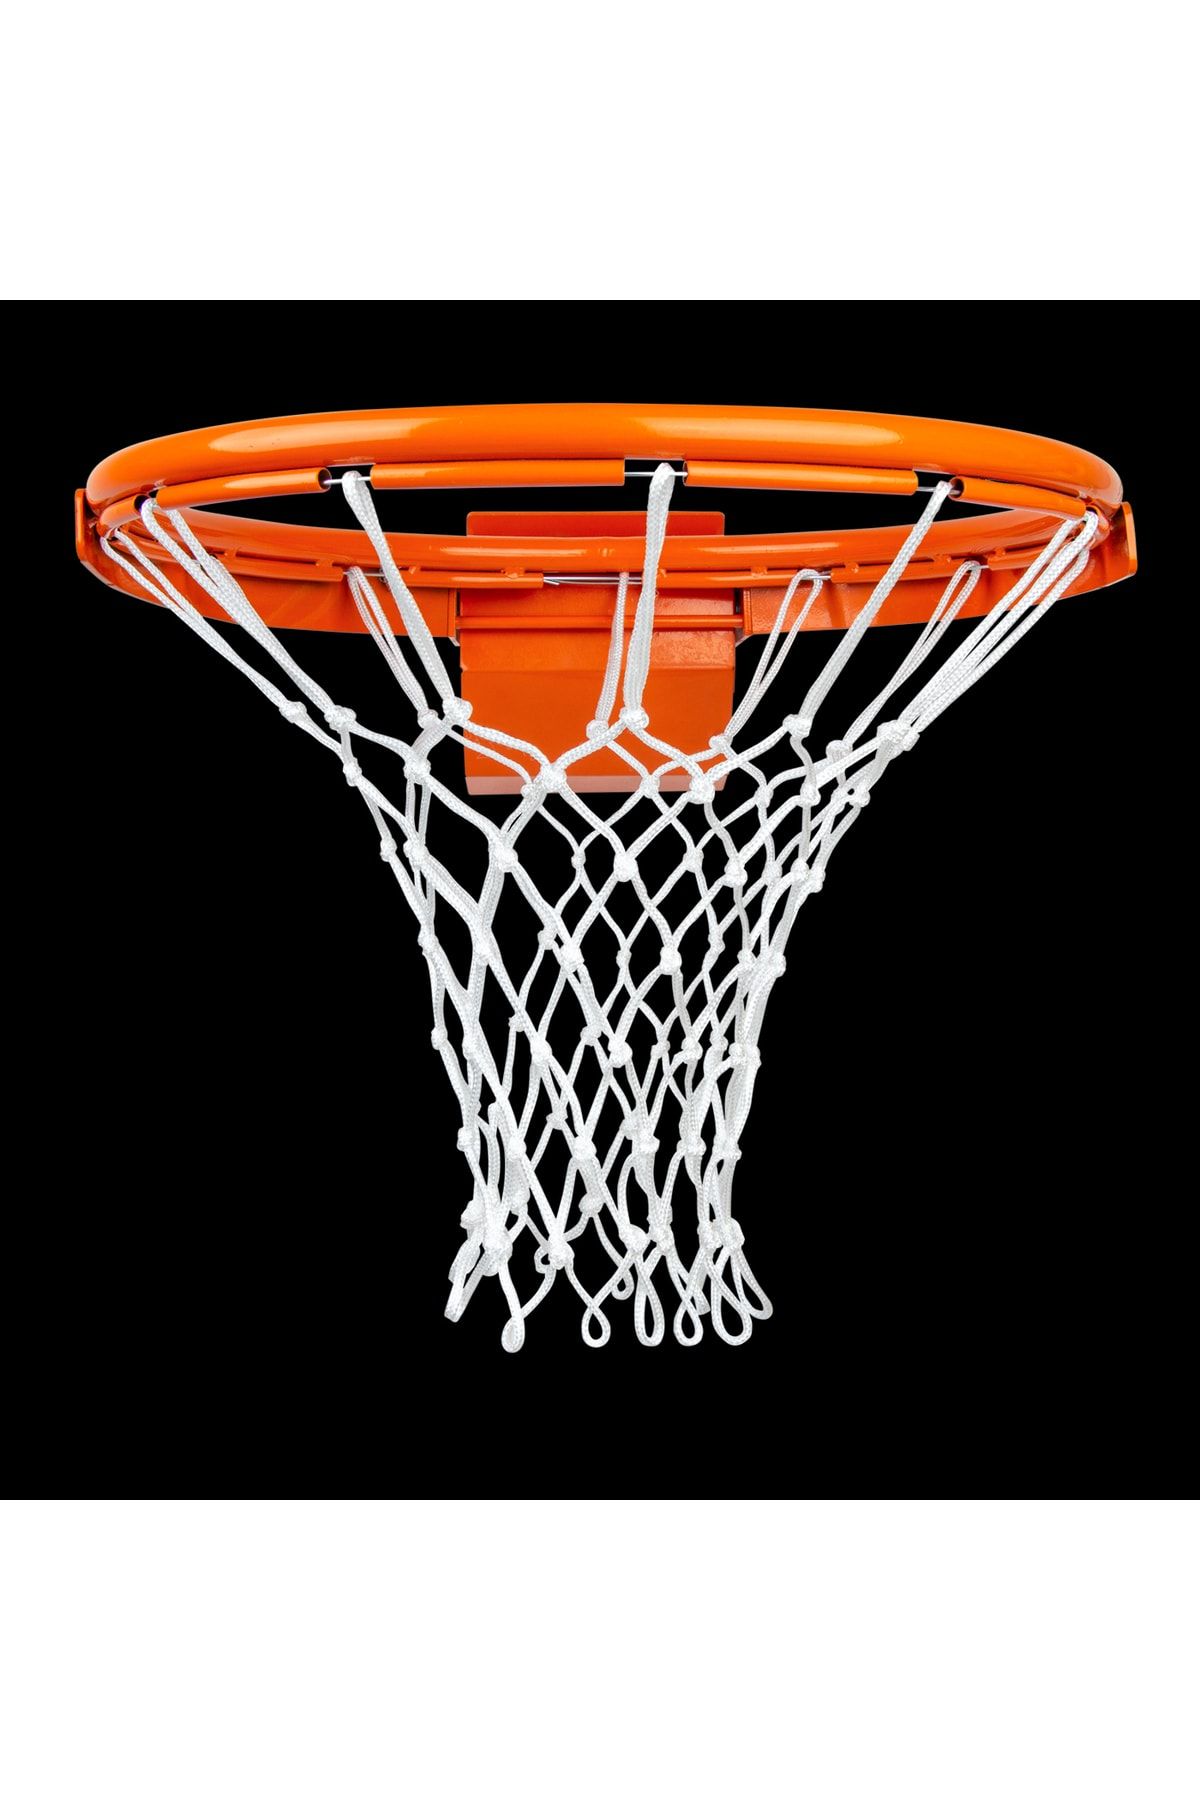 Nodes Basketbol Pota Filesi Ağı - Profesyonel - 2 Adet - Sadece Filesi